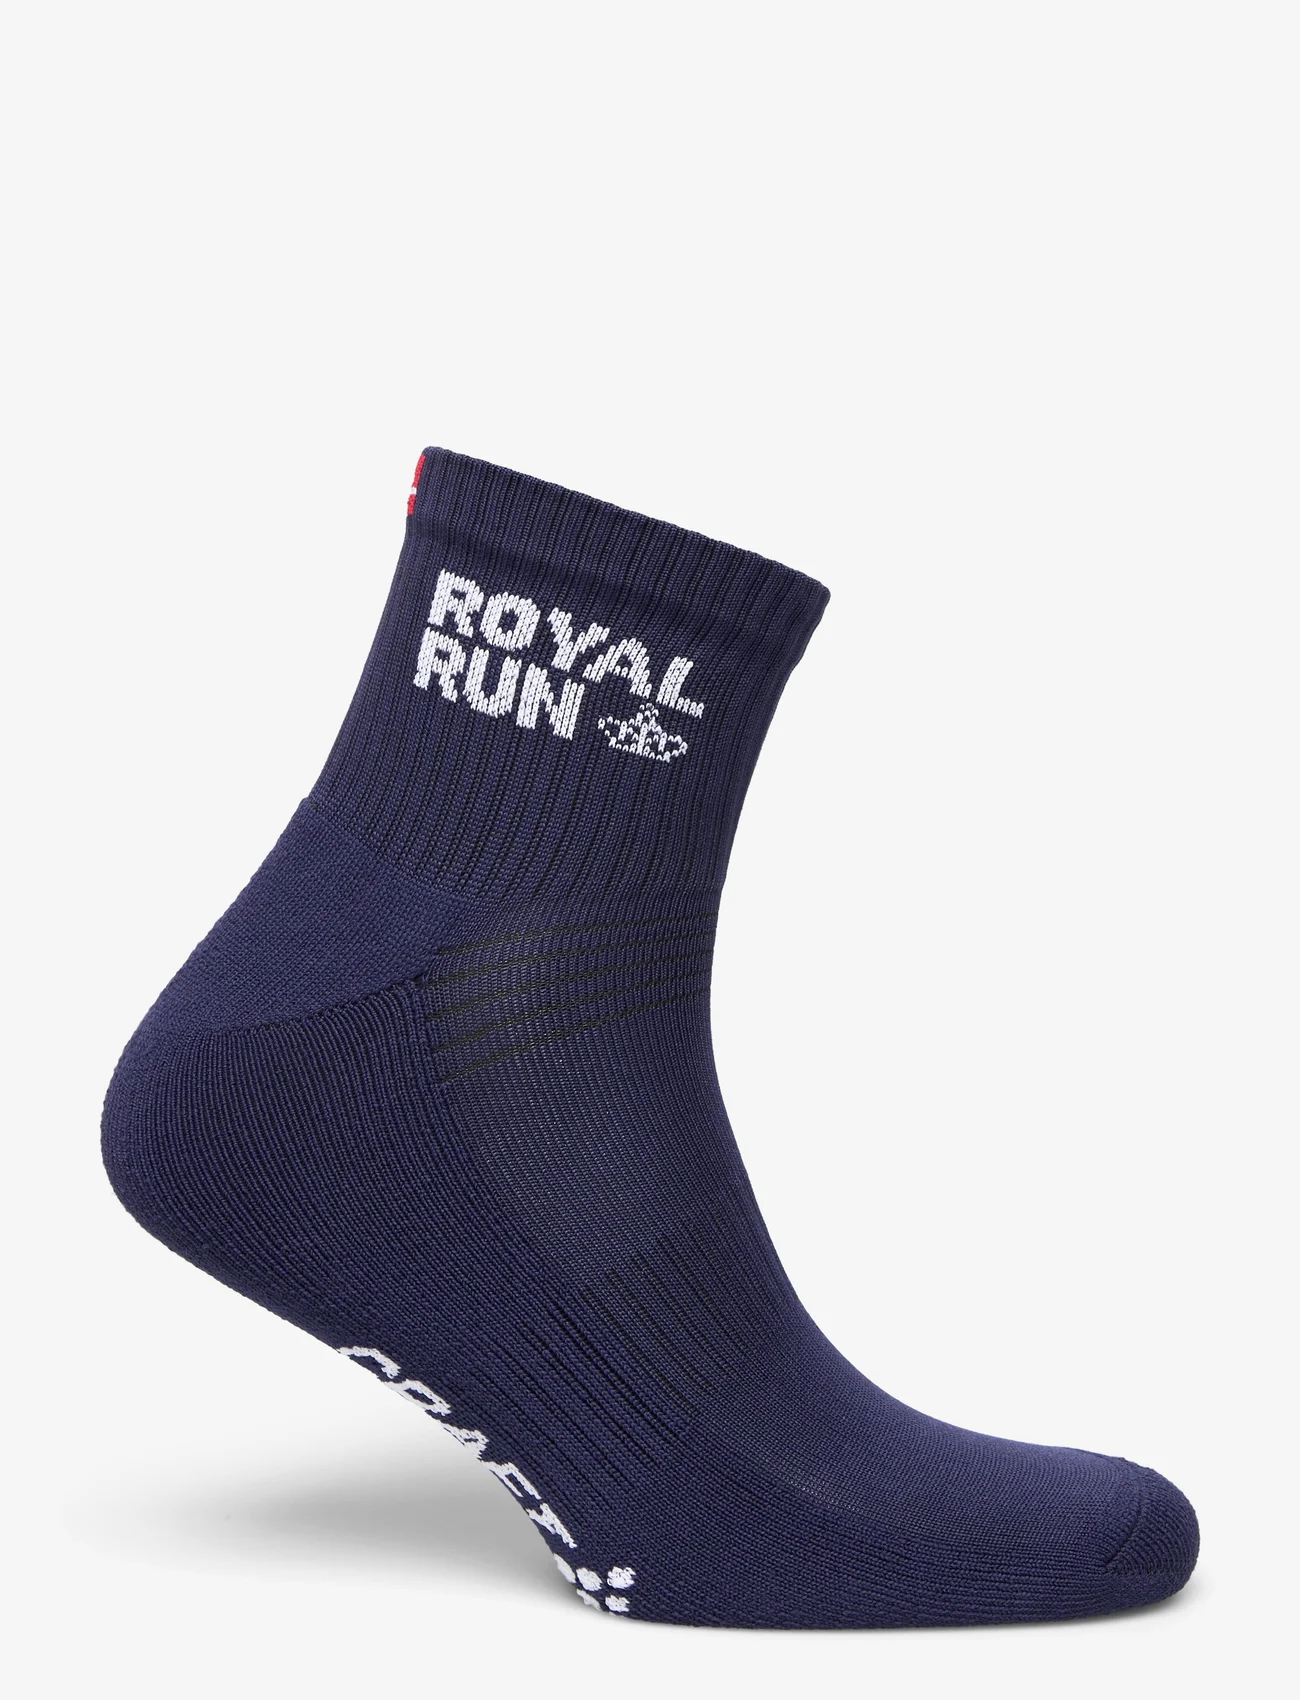 Craft - Royal Run Sock - mažiausios kainos - navy - 1